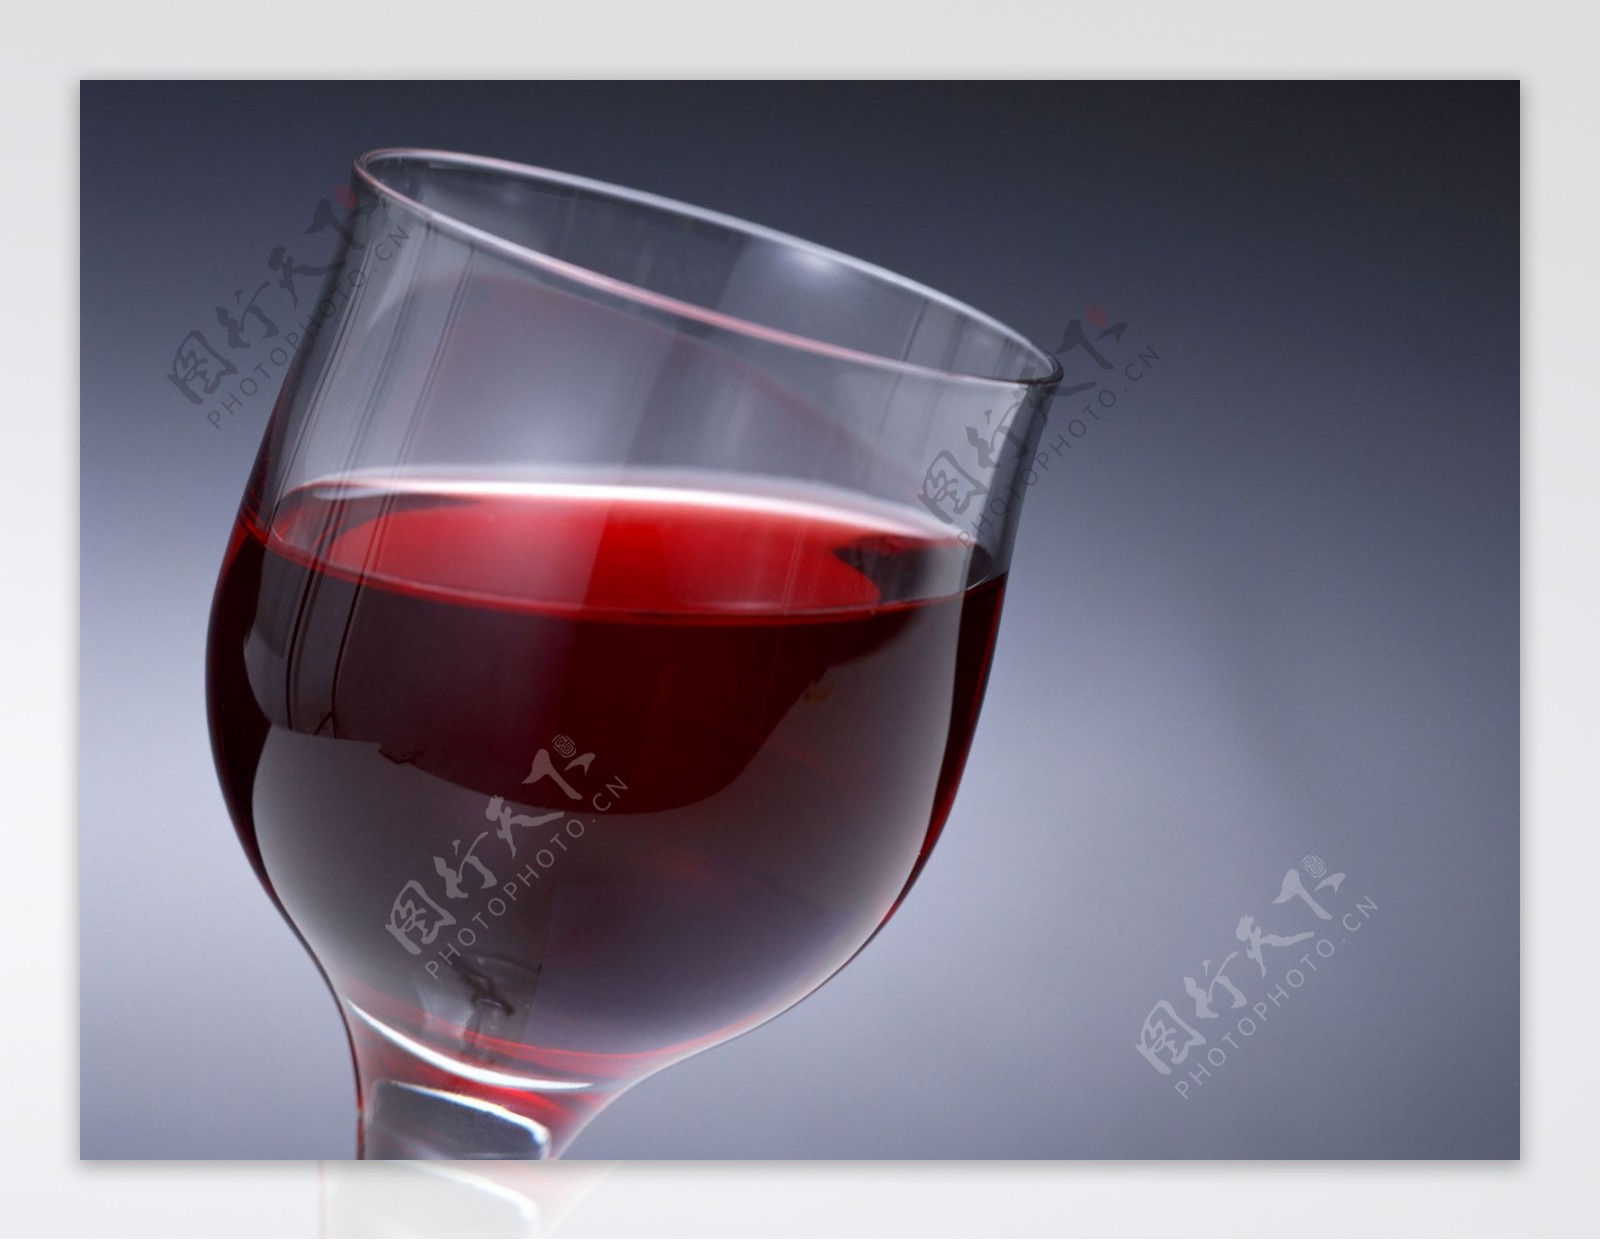 葡萄美酒夜光杯图片